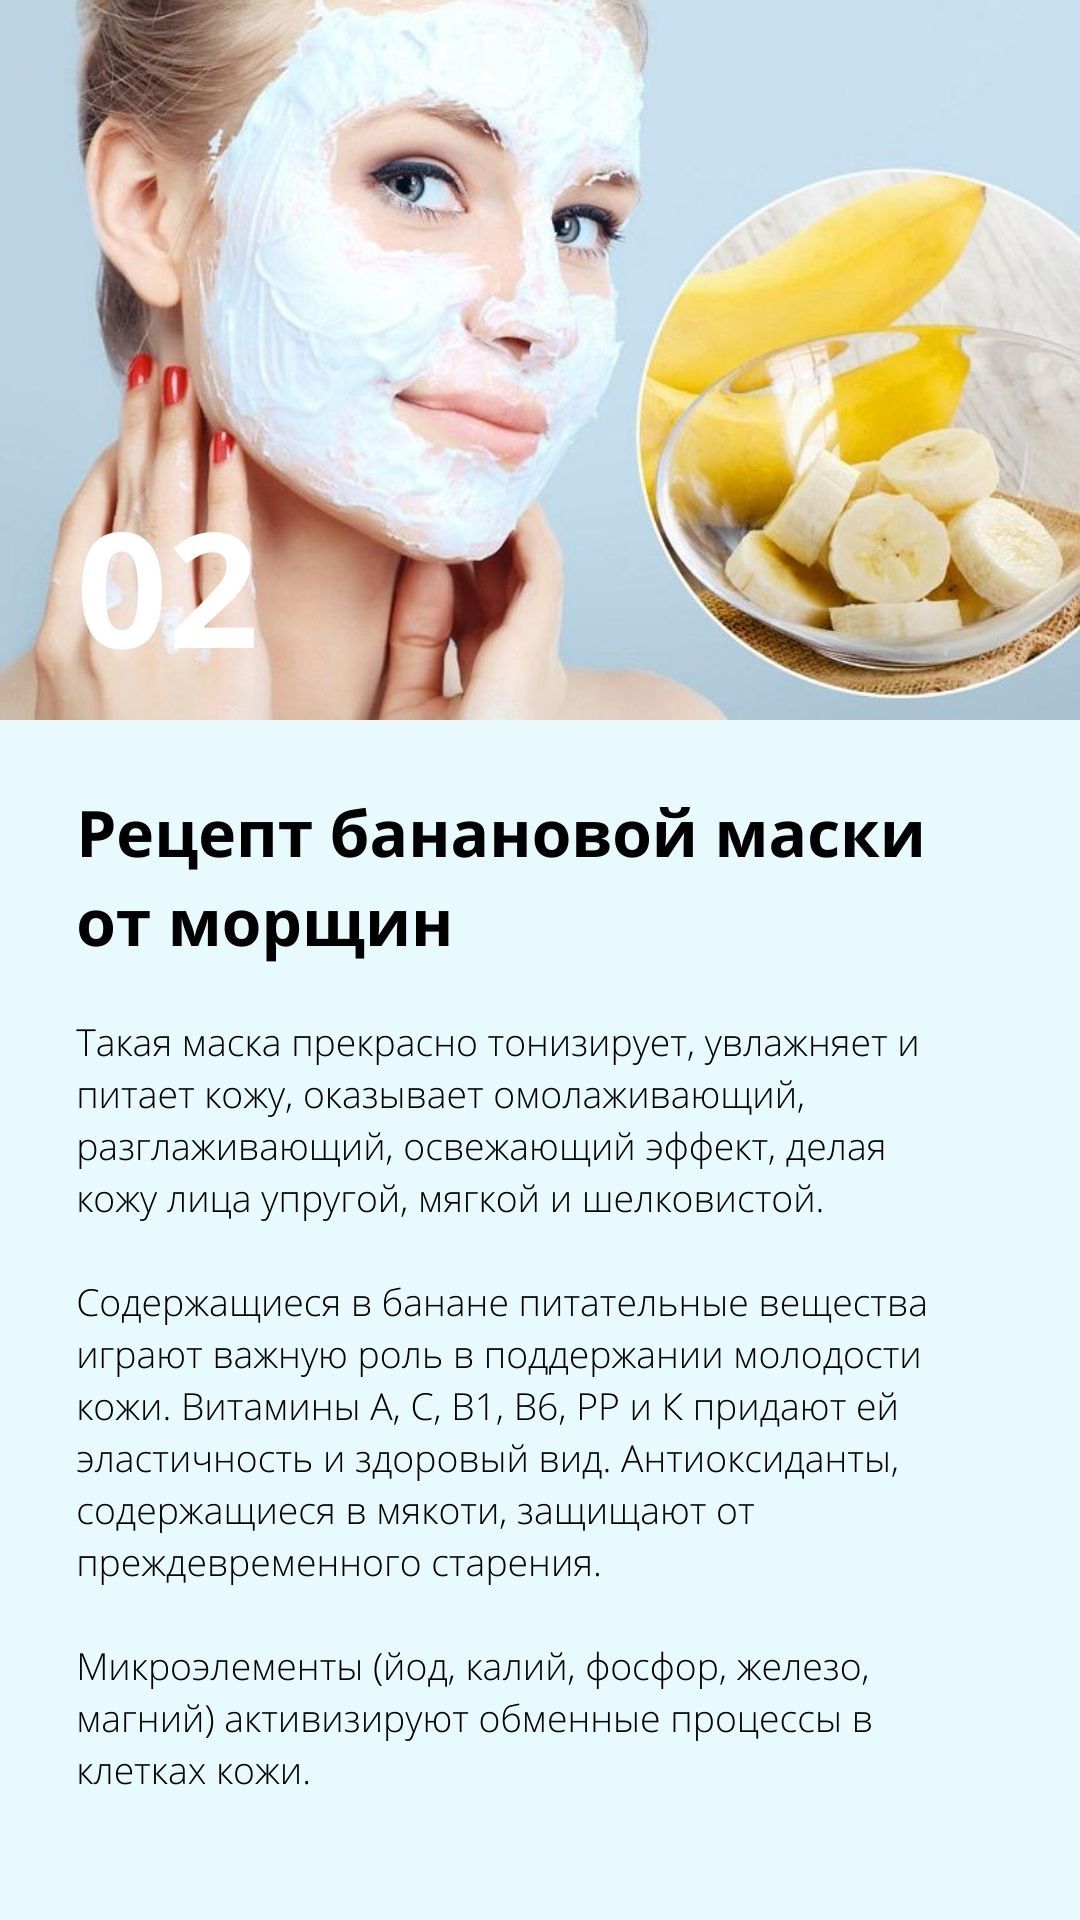 6 масок из спирулины для лица от морщин и прыщей: полезные свойства для женщин, рецепты в домашних условиях, отзывы о таблетках в косметологии